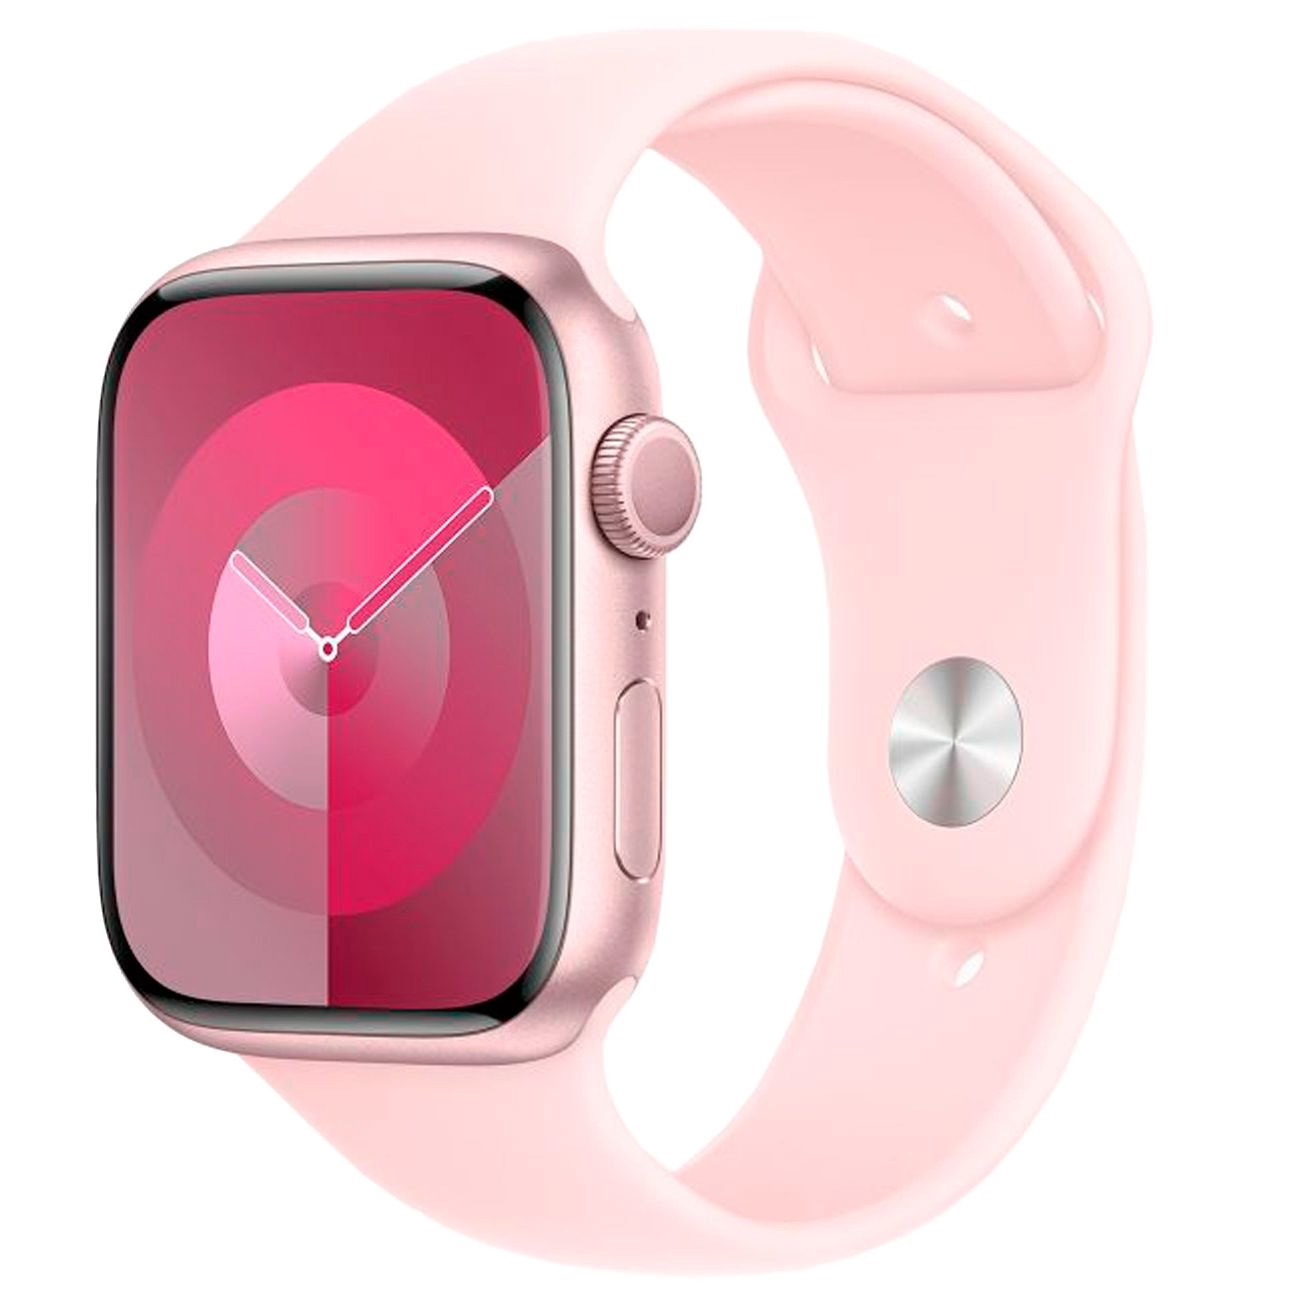 Купить смарт-часы apple watch s9 45mm pink aluminium Apple Watch 9 в официальном магазине Apple, Samsung, Xiaomi. iPixel.ru Купить, заказ, кредит, рассрочка, отзывы,  характеристики, цена,  фотографии, в подарок.